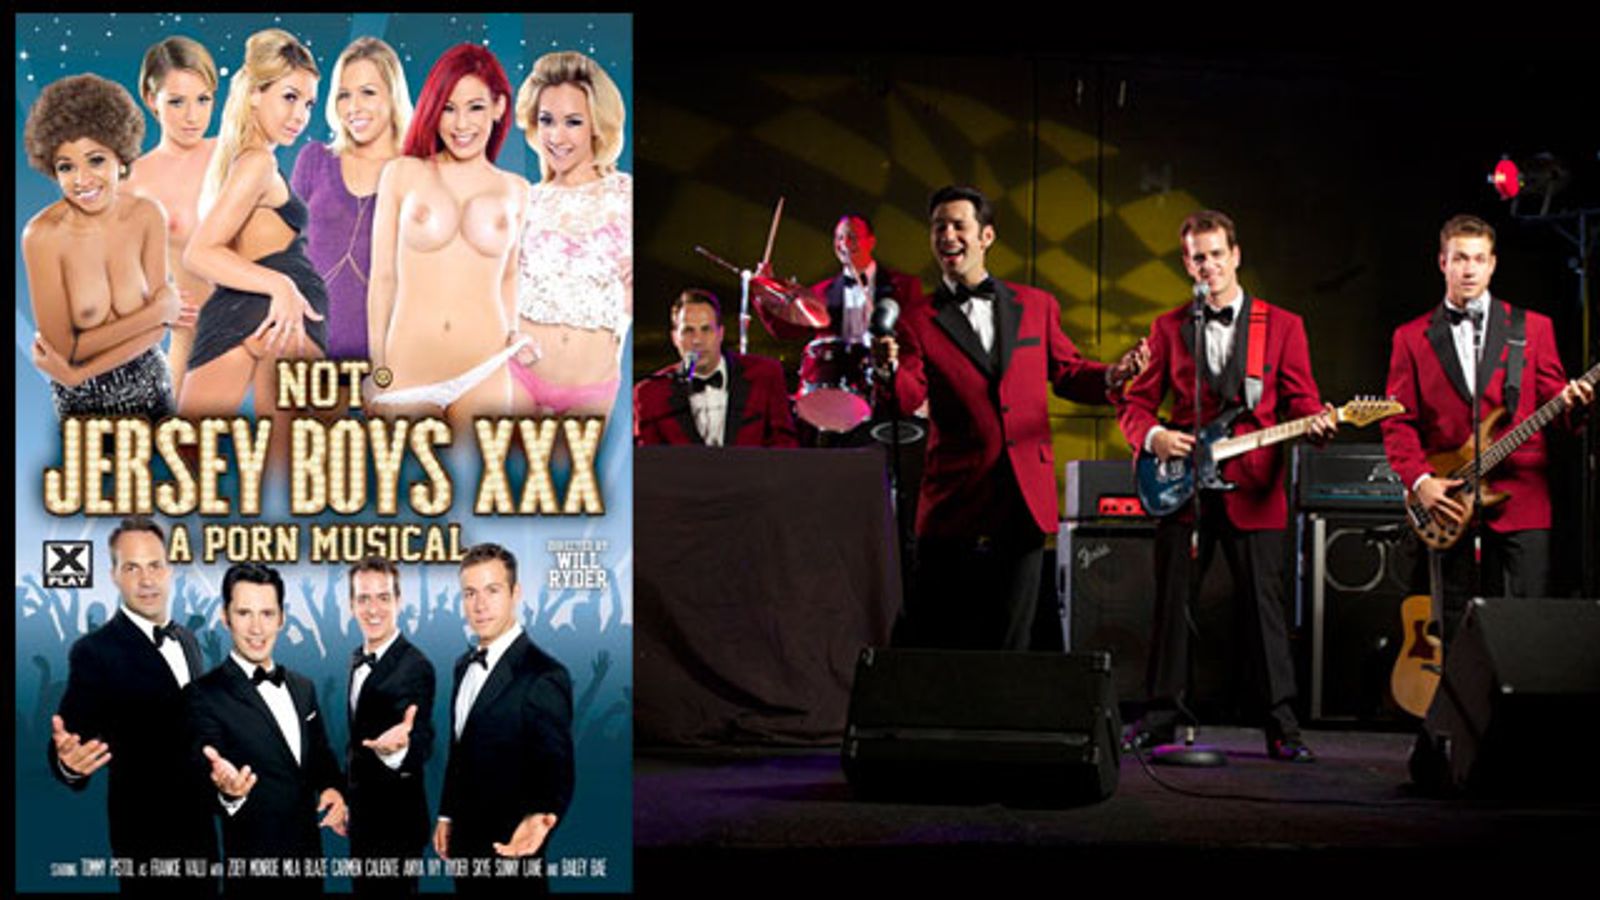 'Not Jersey Boys XXX' Nearly Leads Pack With Dozen AVN Awards Noms